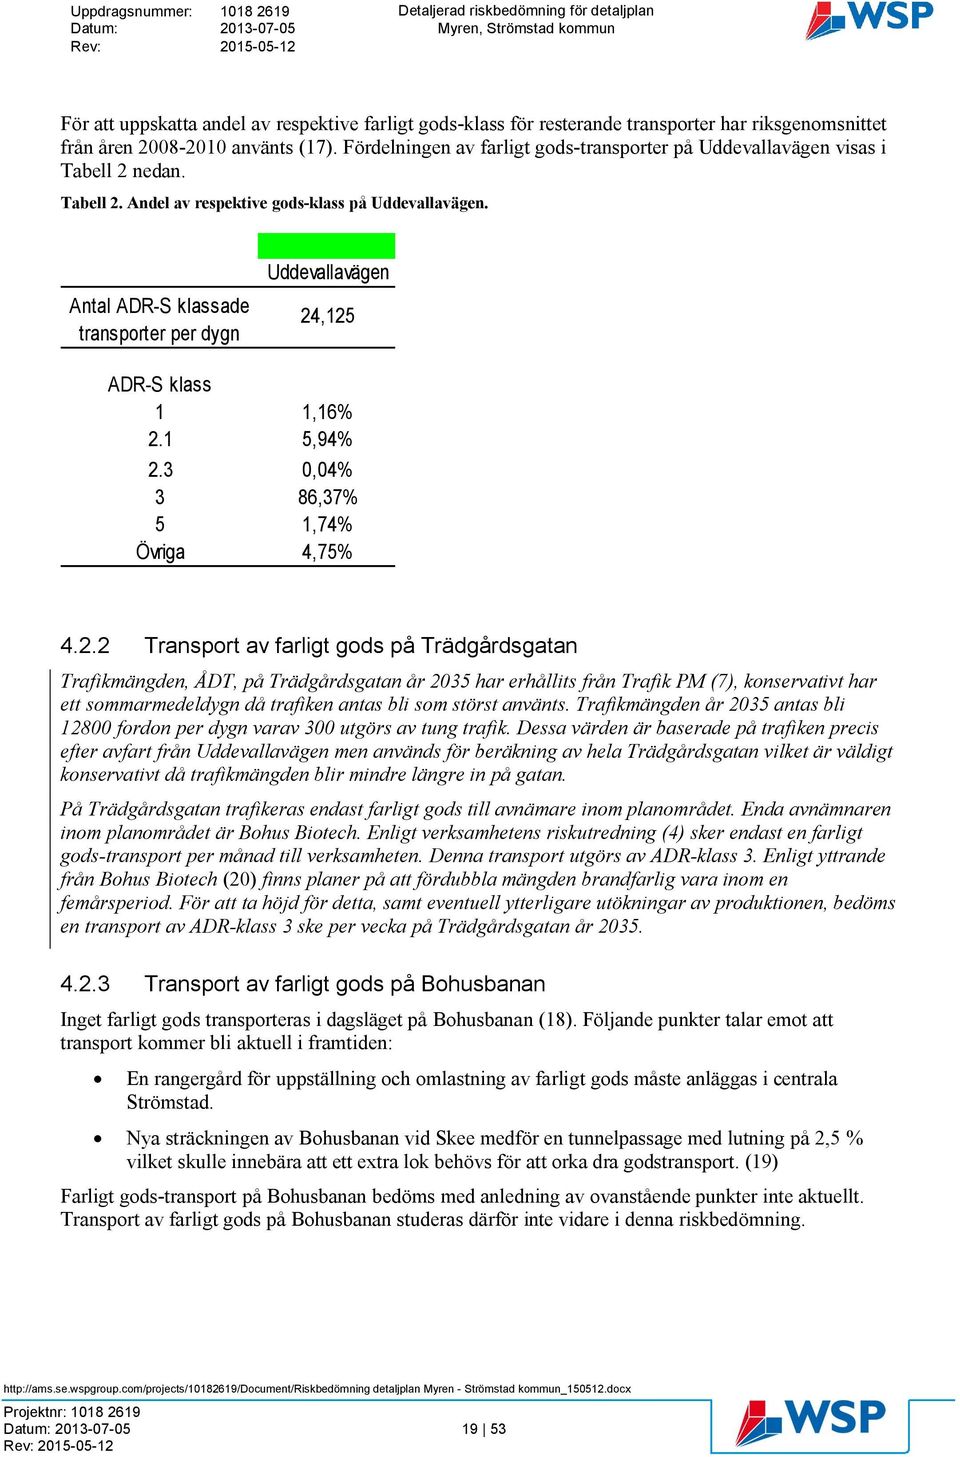 Antal ADR-S klassade transporter per dygn Uddevallavägen 24